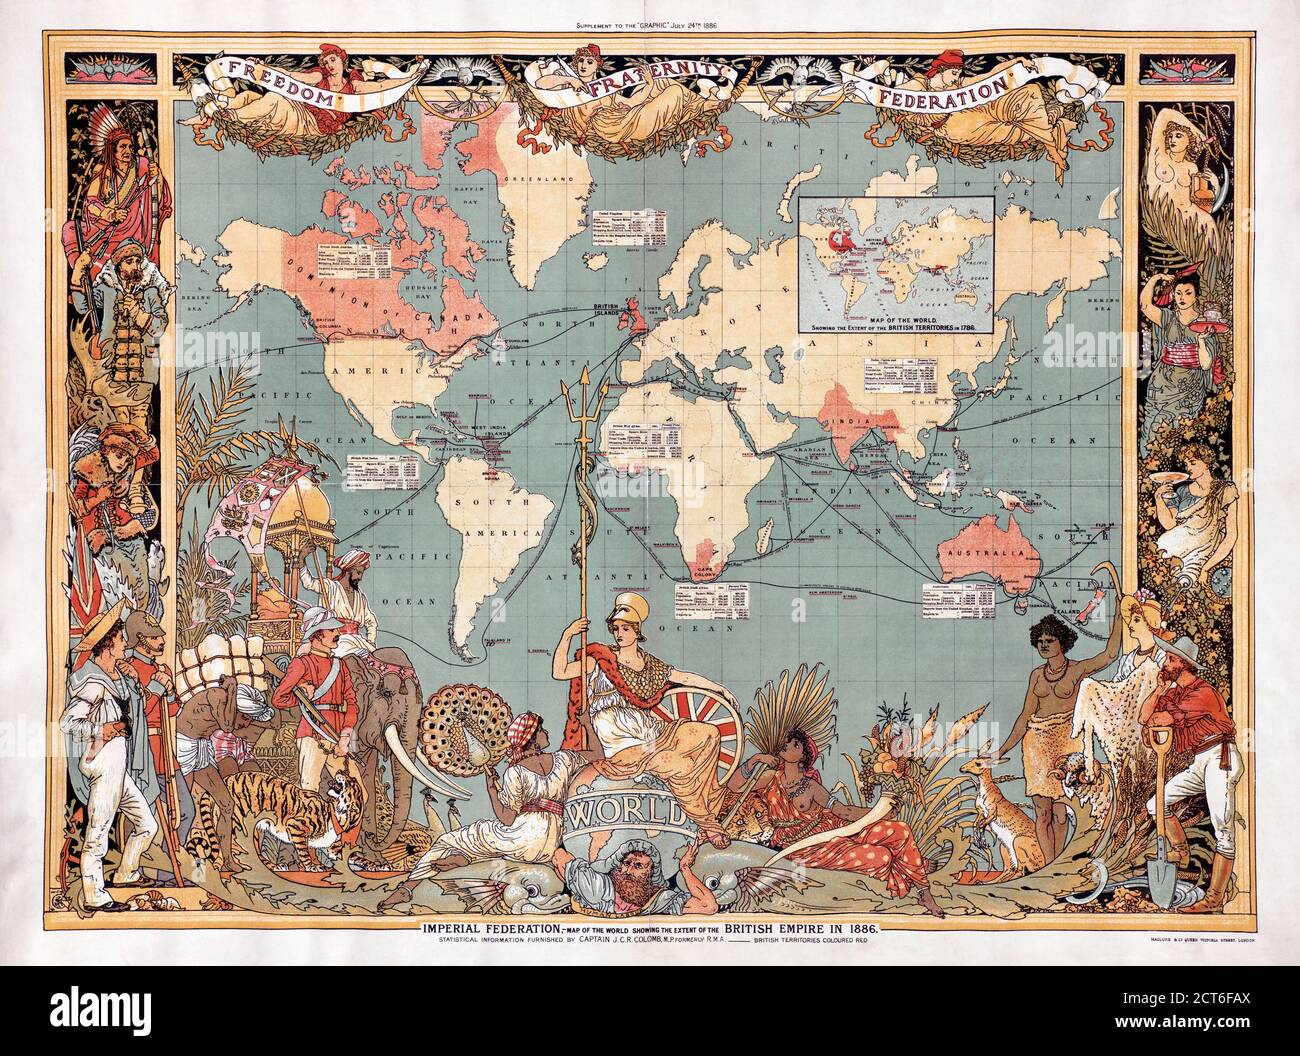 Mapa del mundo que muestra la extensión del Imperio Británico en 1886. Los territorios del Imperio están marcados en rojo. El mapa fue incluido como un suplemento en la edición del 24 de julio de 1886 del periódico británico ilustrado The Graphic. Foto de stock